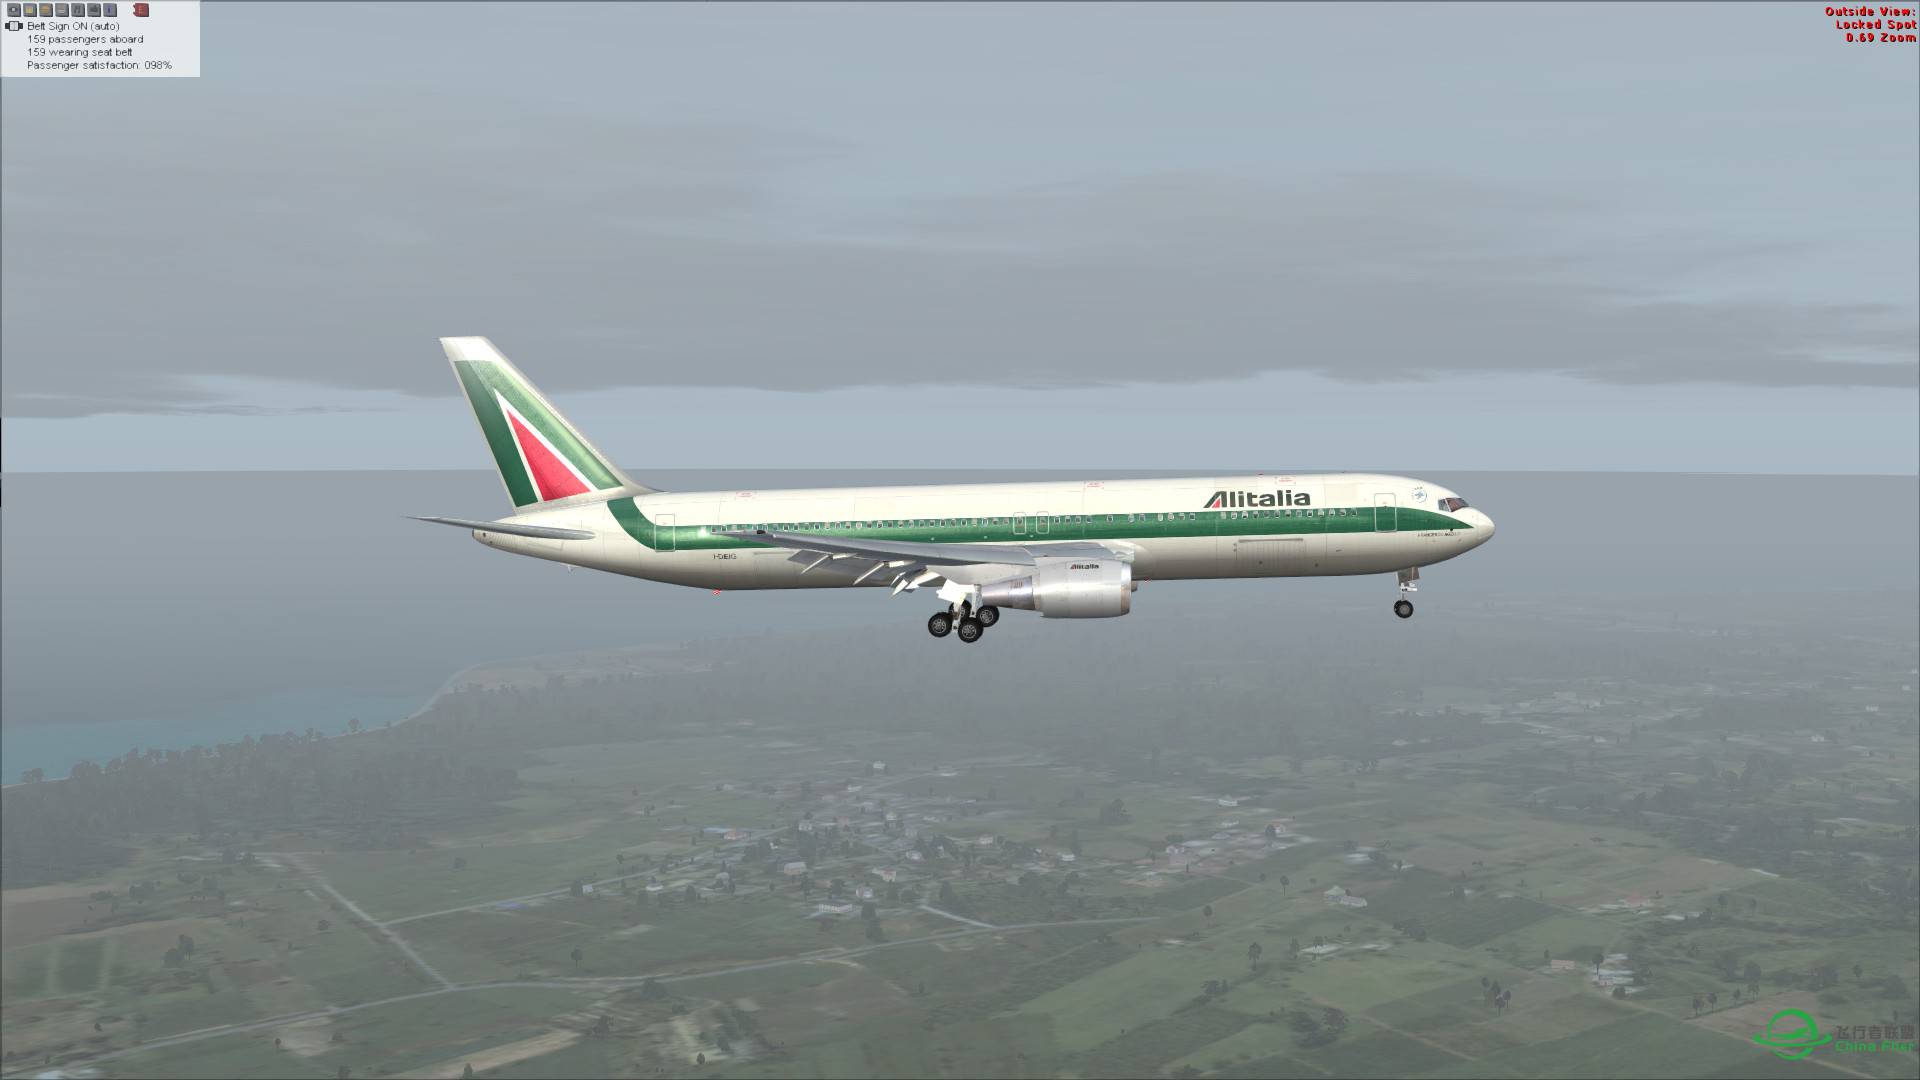 意大利航空 767-300ER 罗马-吉隆坡-2344 